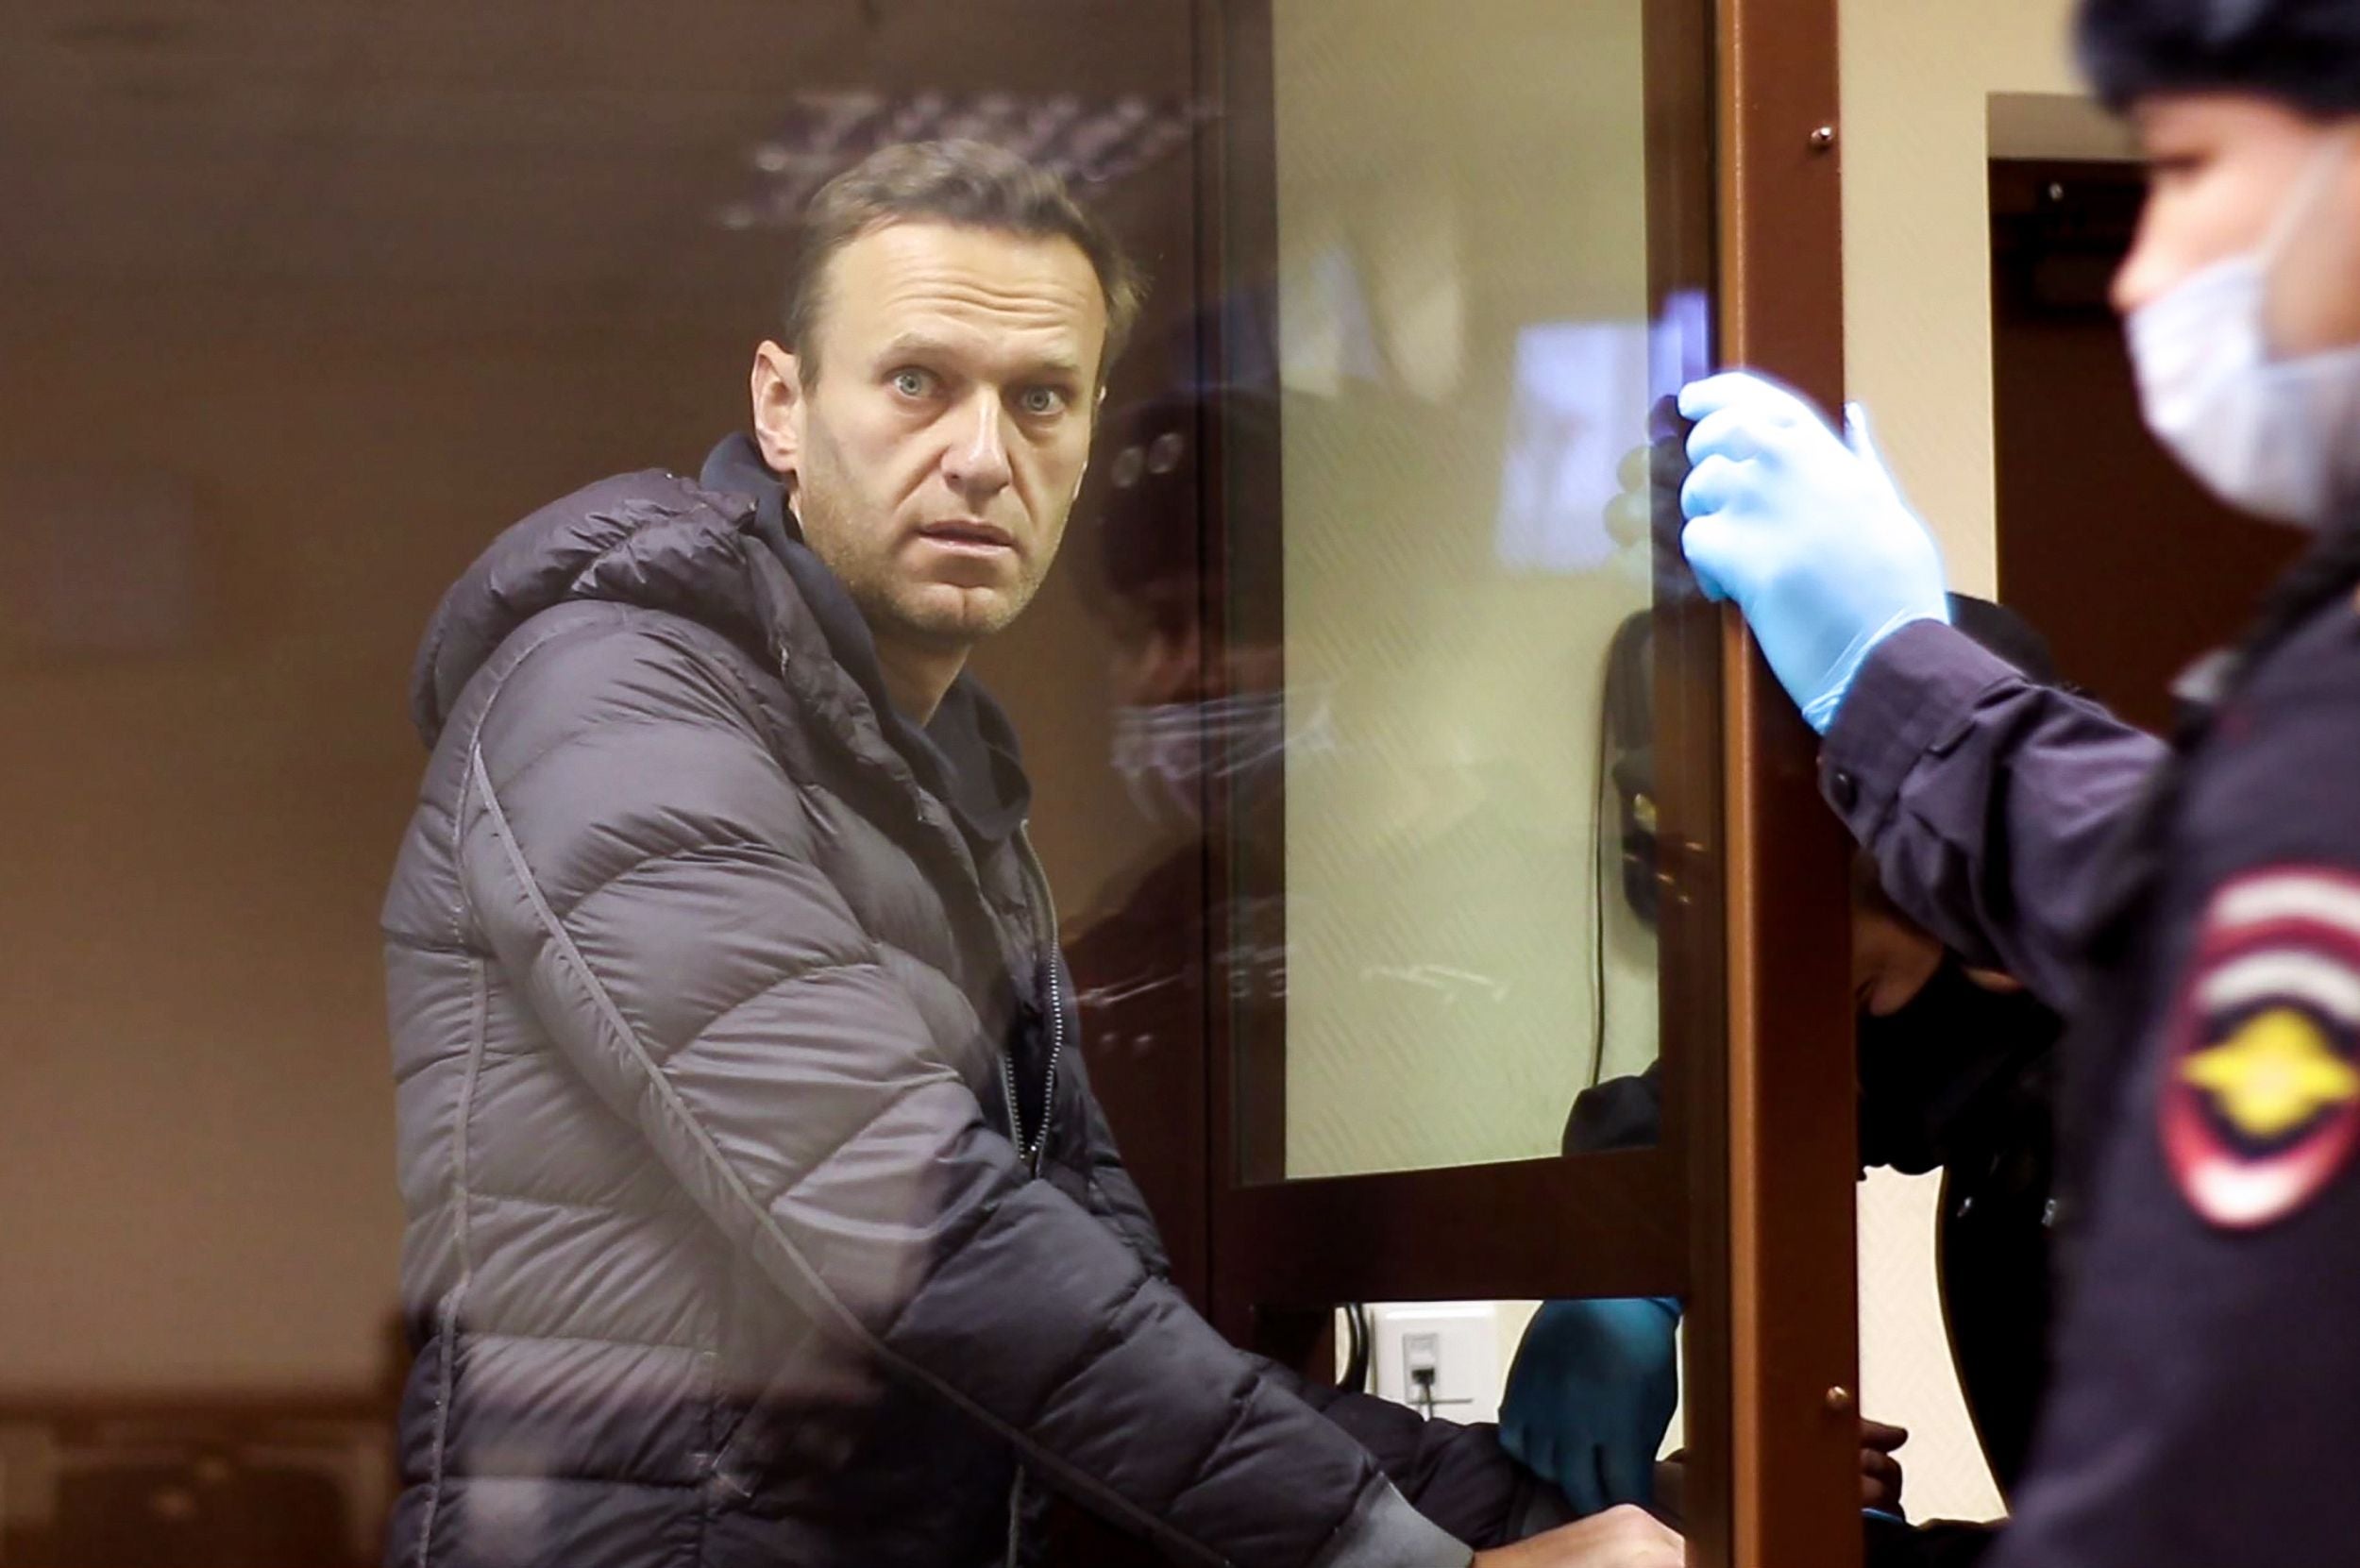 Alexei Navalny in court earlier this week